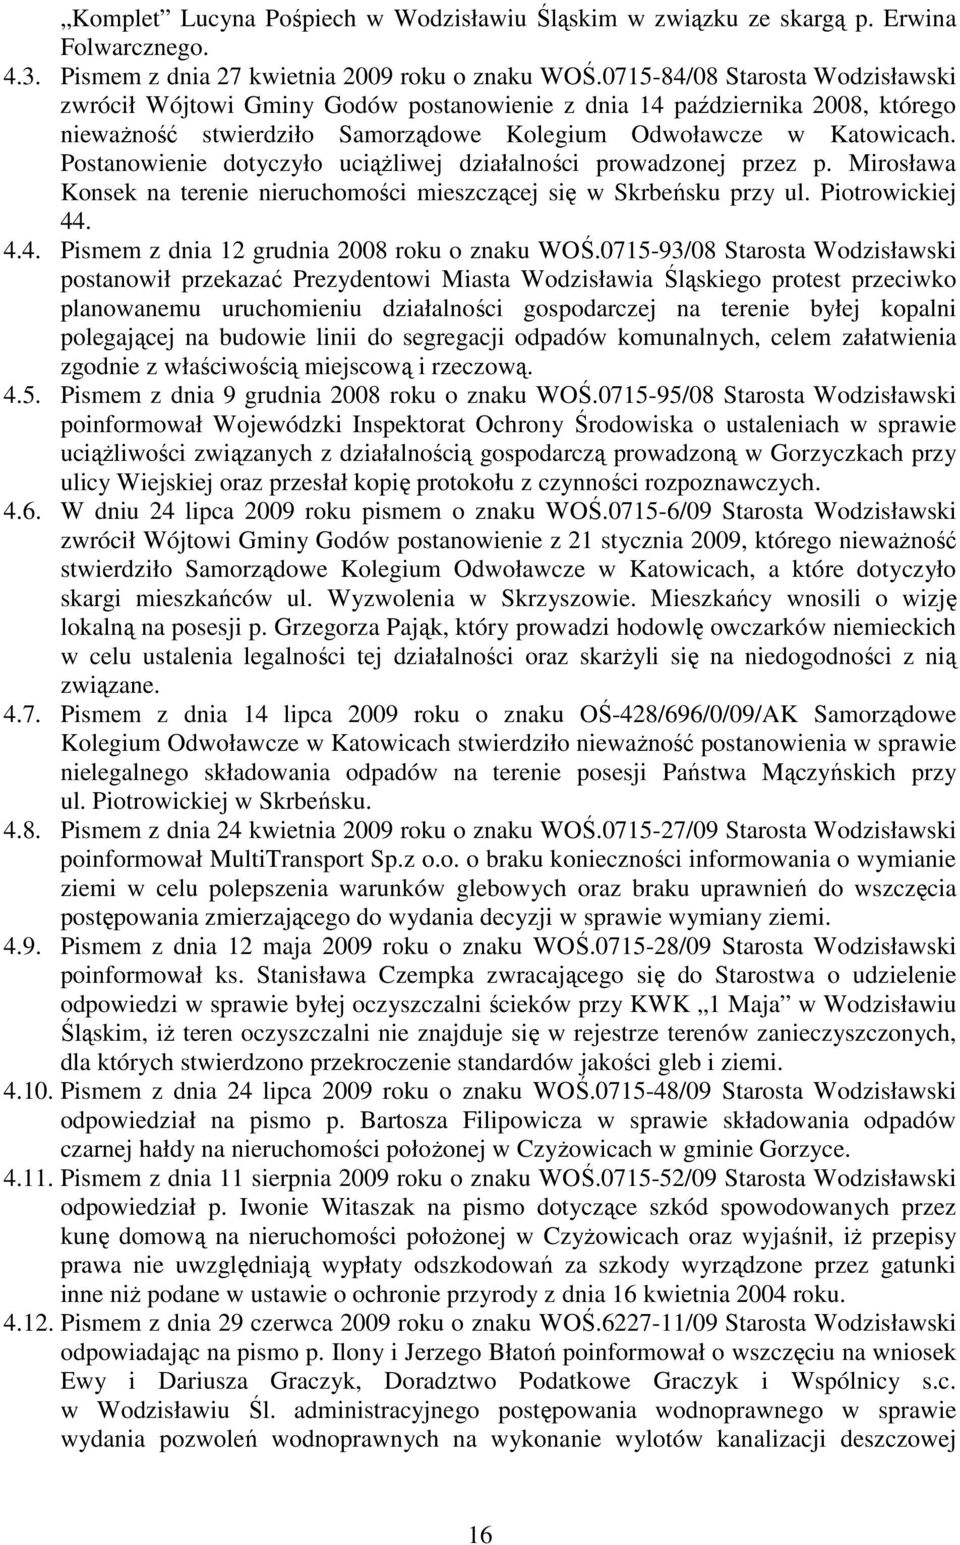 Postanowienie dotyczyło uciąŝliwej działalności prowadzonej przez p. Mirosława Konsek na terenie nieruchomości mieszczącej się w Skrbeńsku przy ul. Piotrowickiej 44